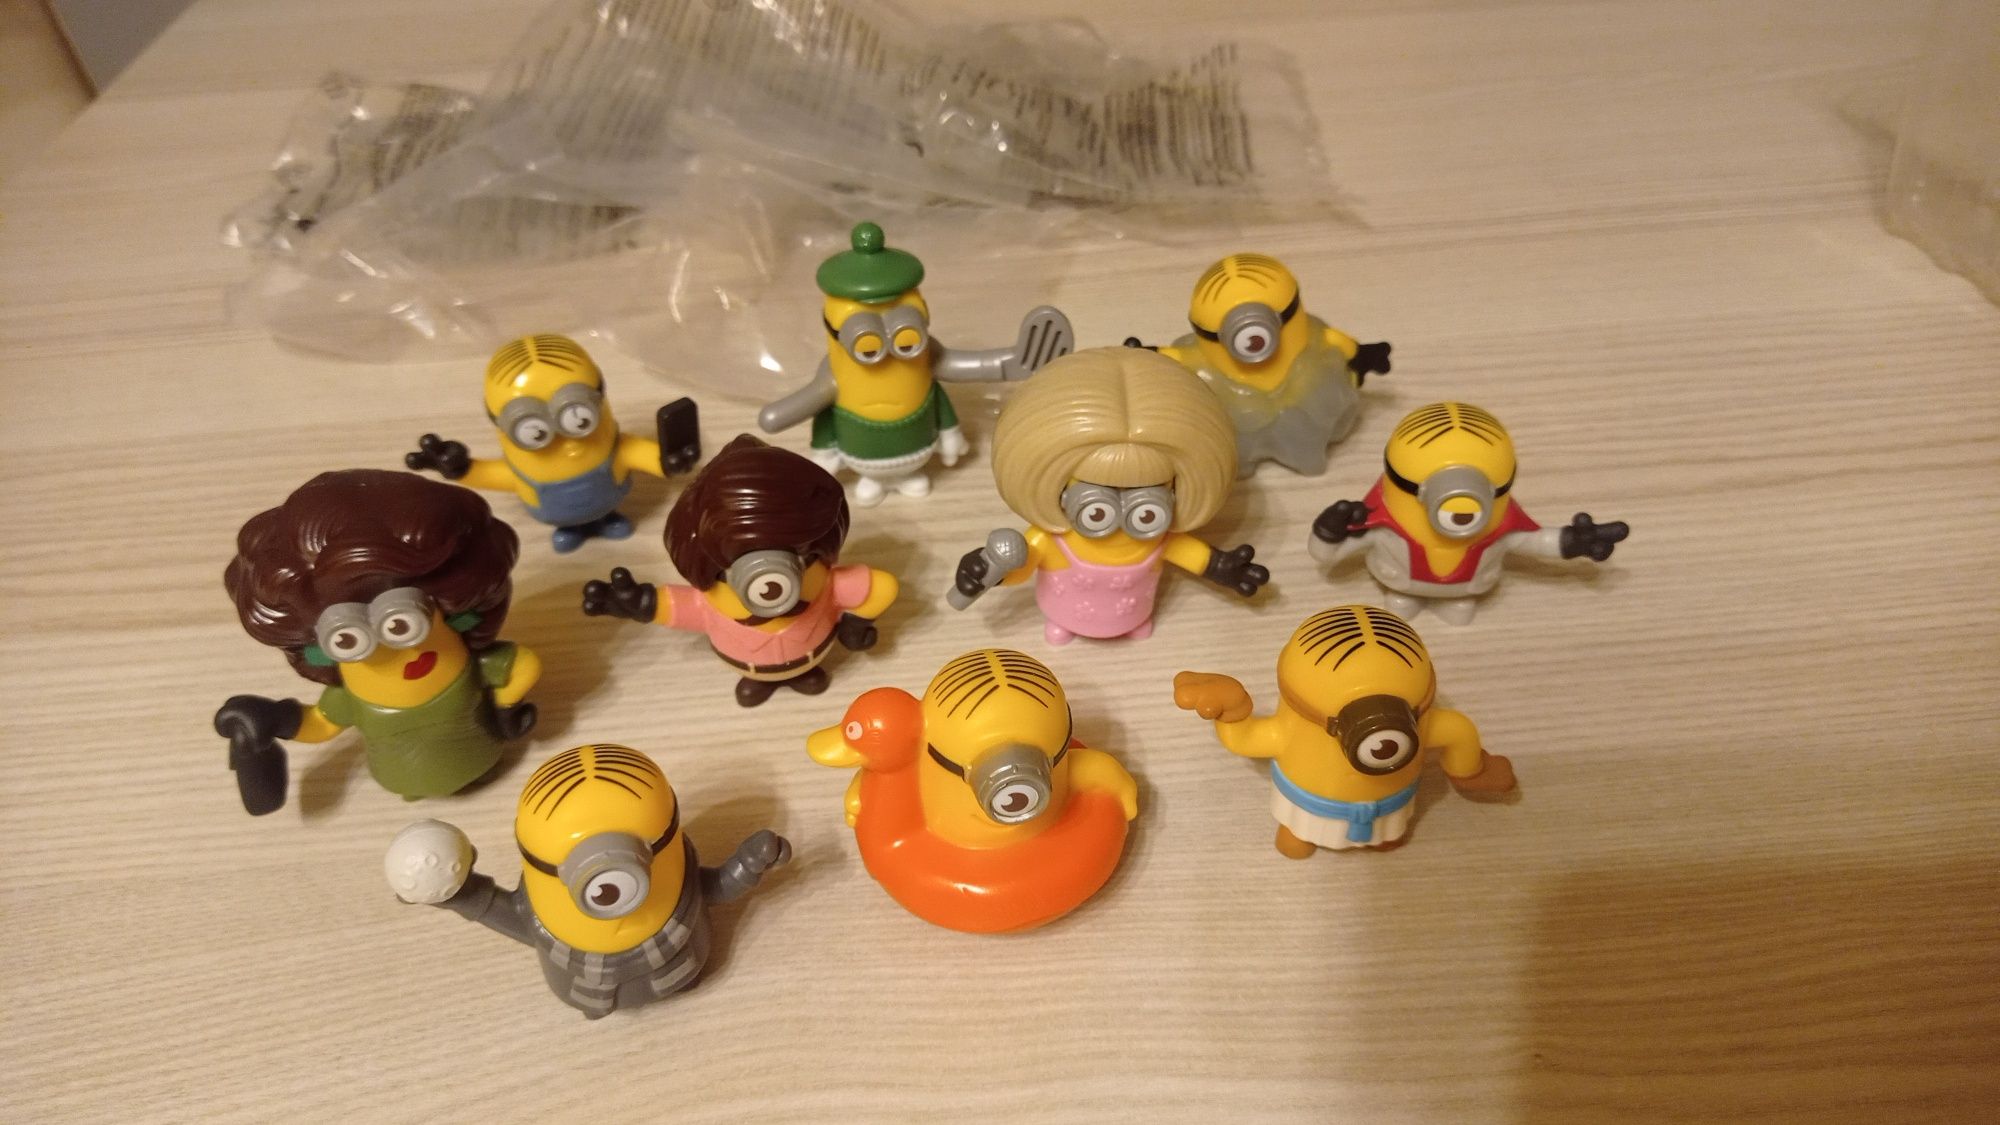 Minionek Minionki NOWE figurki 10 różnych - Mc Donald's 2019 zestaw z